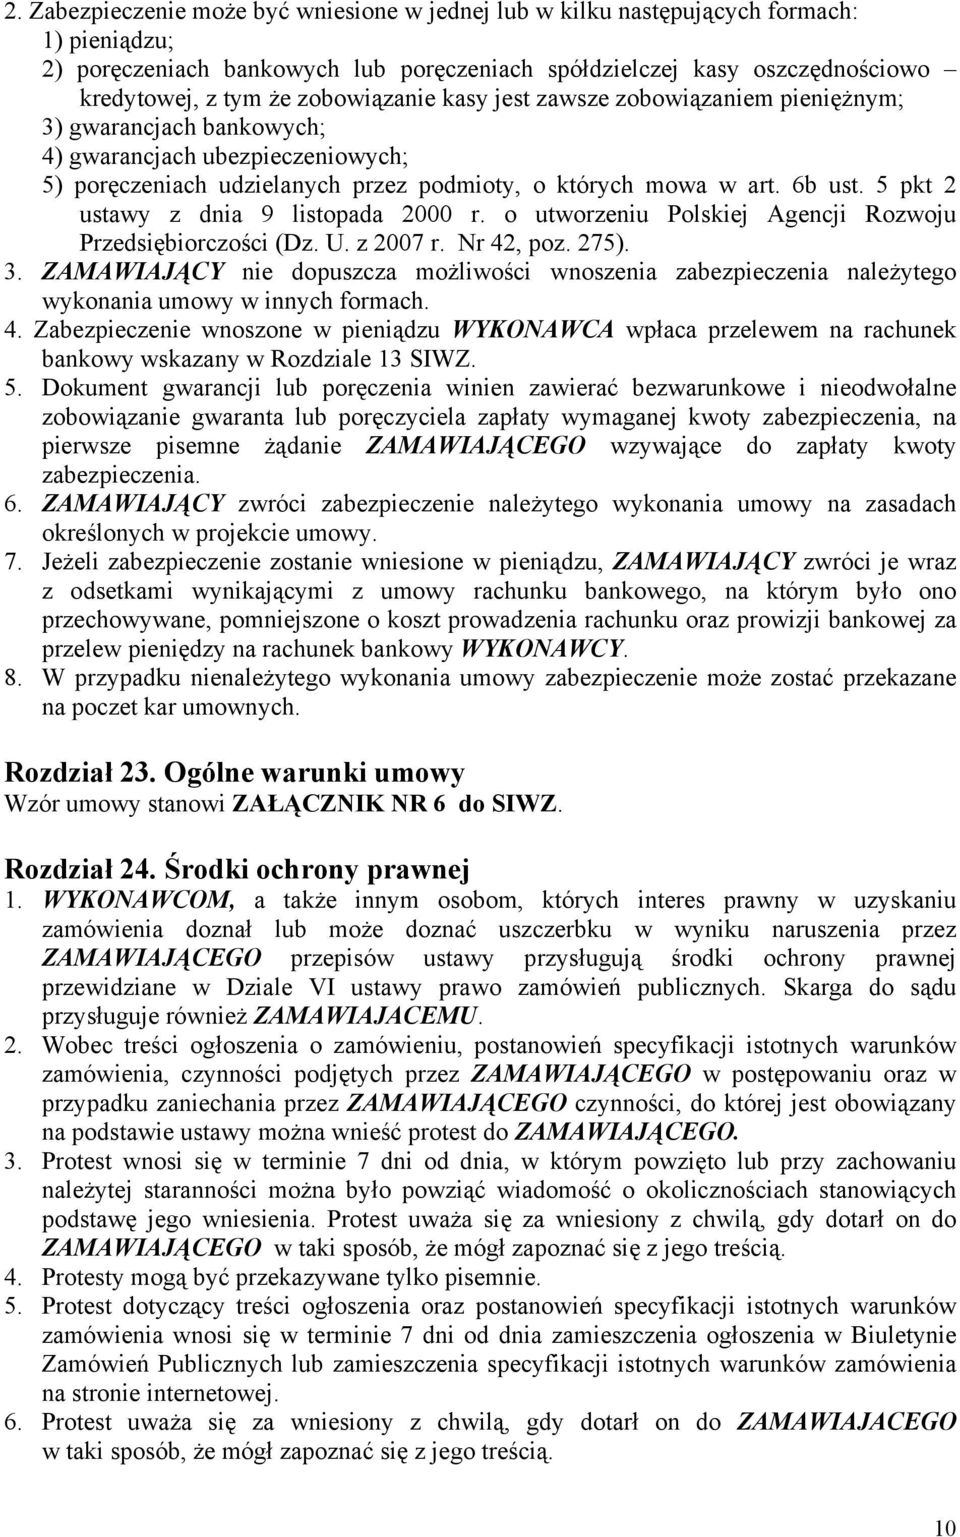 5 pkt 2 ustawy z dnia 9 listopada 2000 r. o utworzeniu Polskiej Agencji Rozwoju Przedsiębiorczości (Dz. U. z 2007 r. Nr 42, poz. 275). 3.